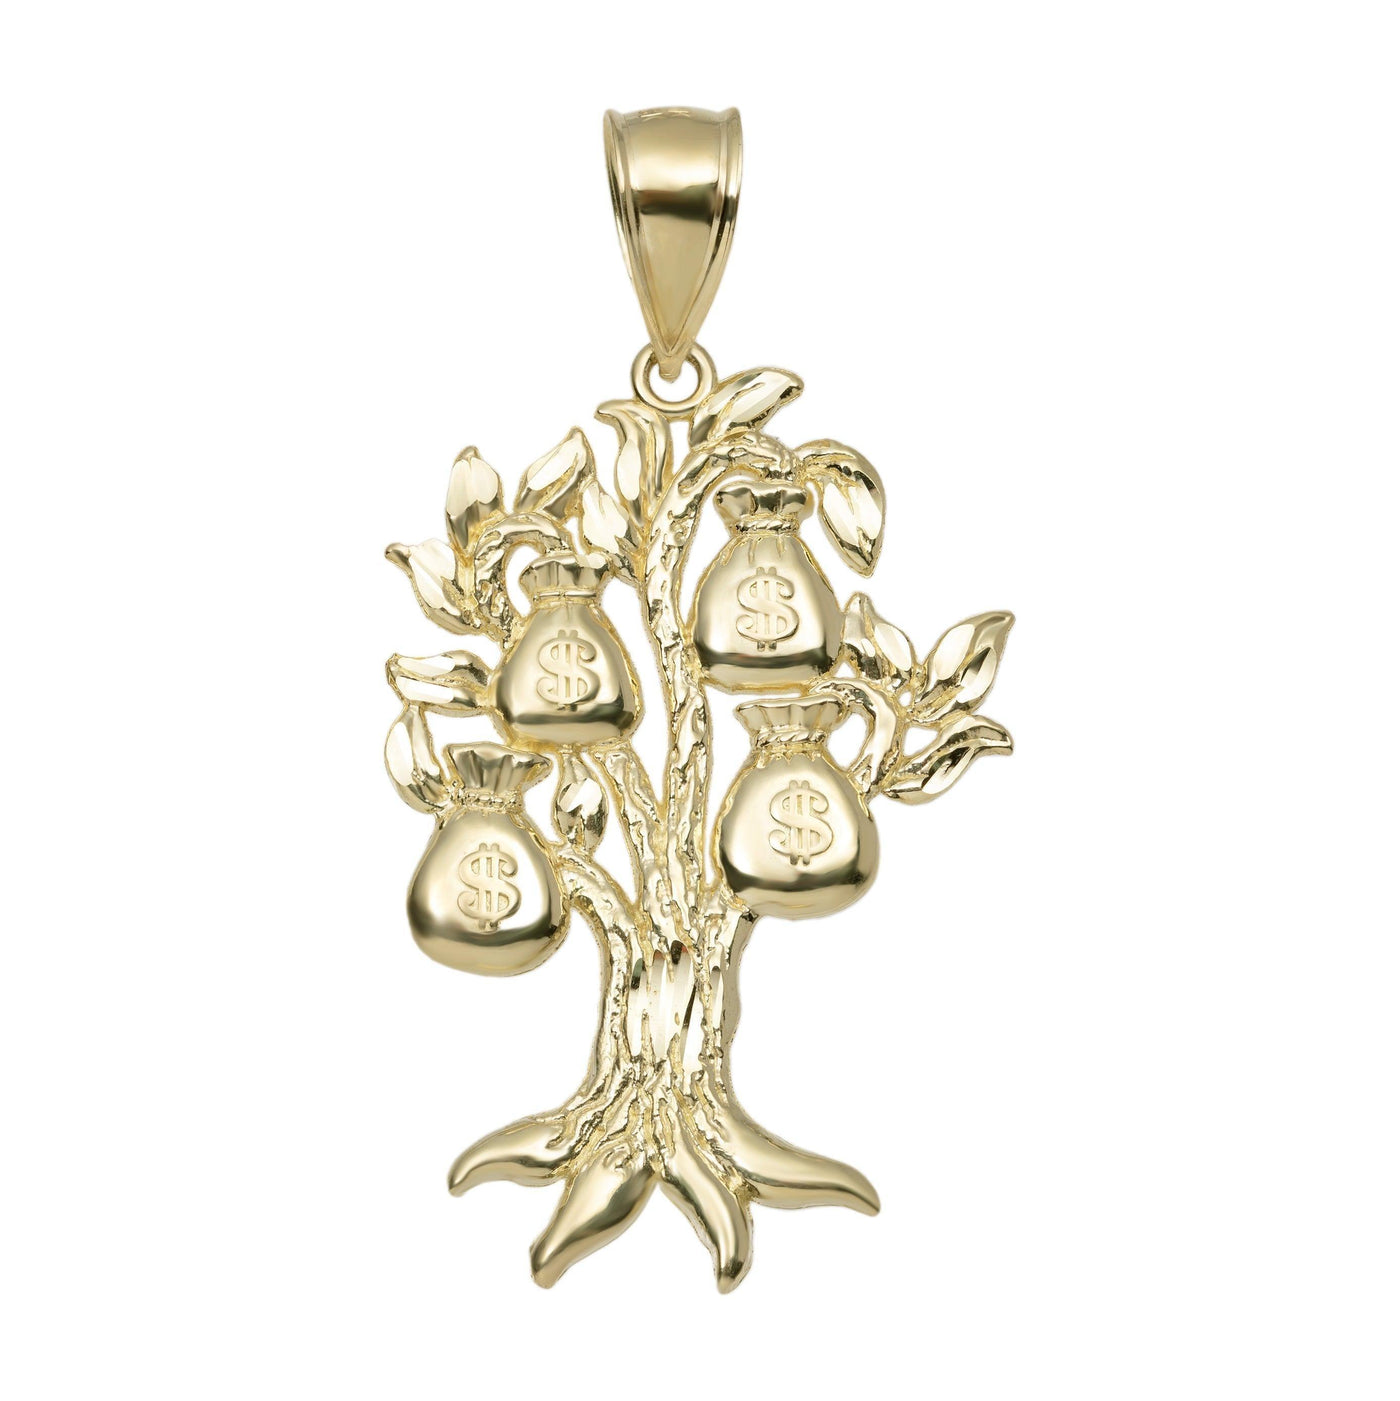 Diamond-Cut Money Bag Tree Pendant 10K Yellow Gold - bayamjewelry